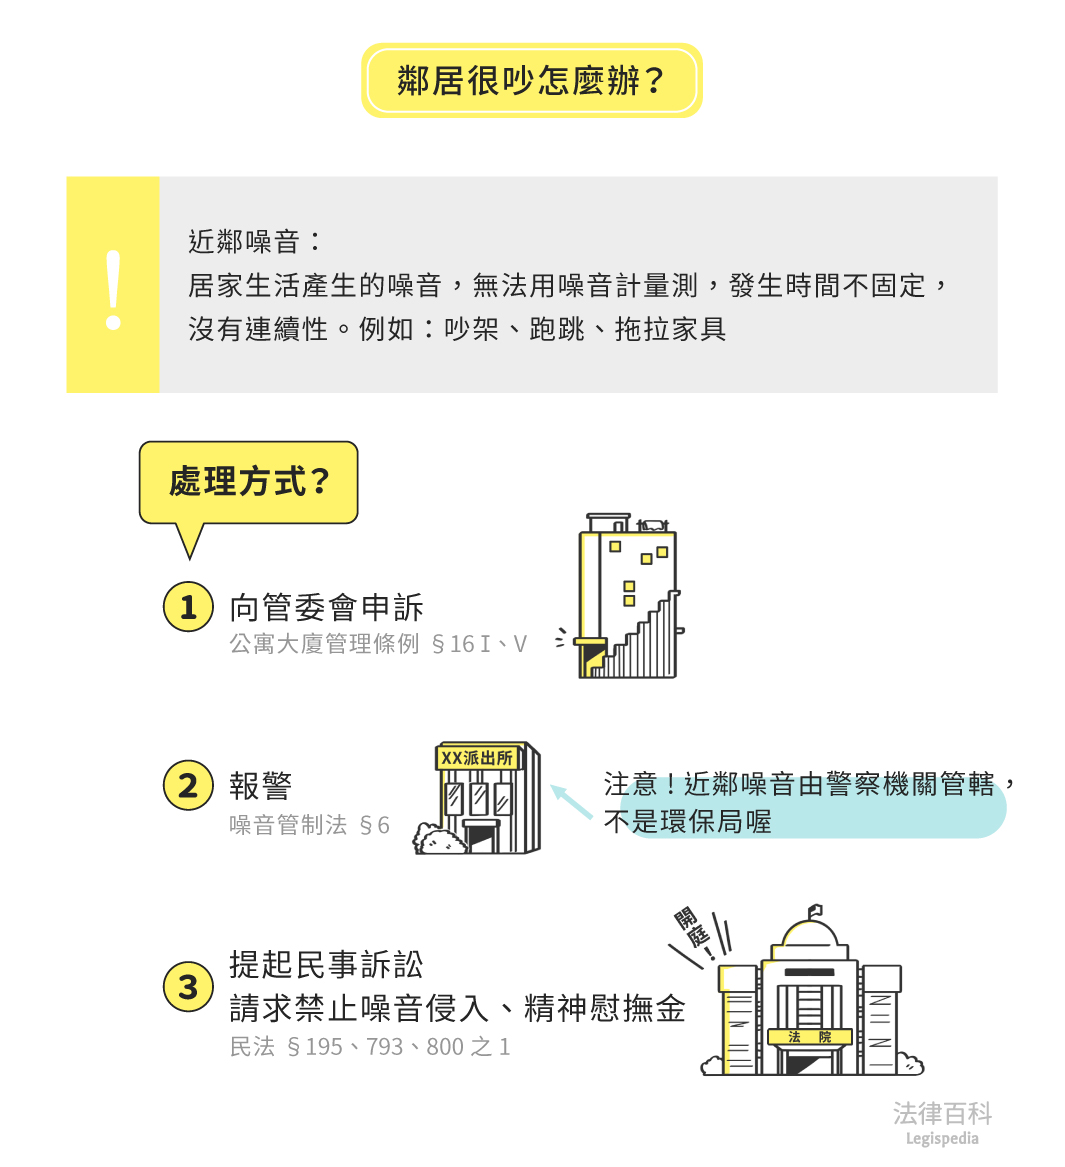 圖1　鄰居很吵怎麼辦？||資料來源：黃蓮瑛、梁九允　/　繪圖：Yen